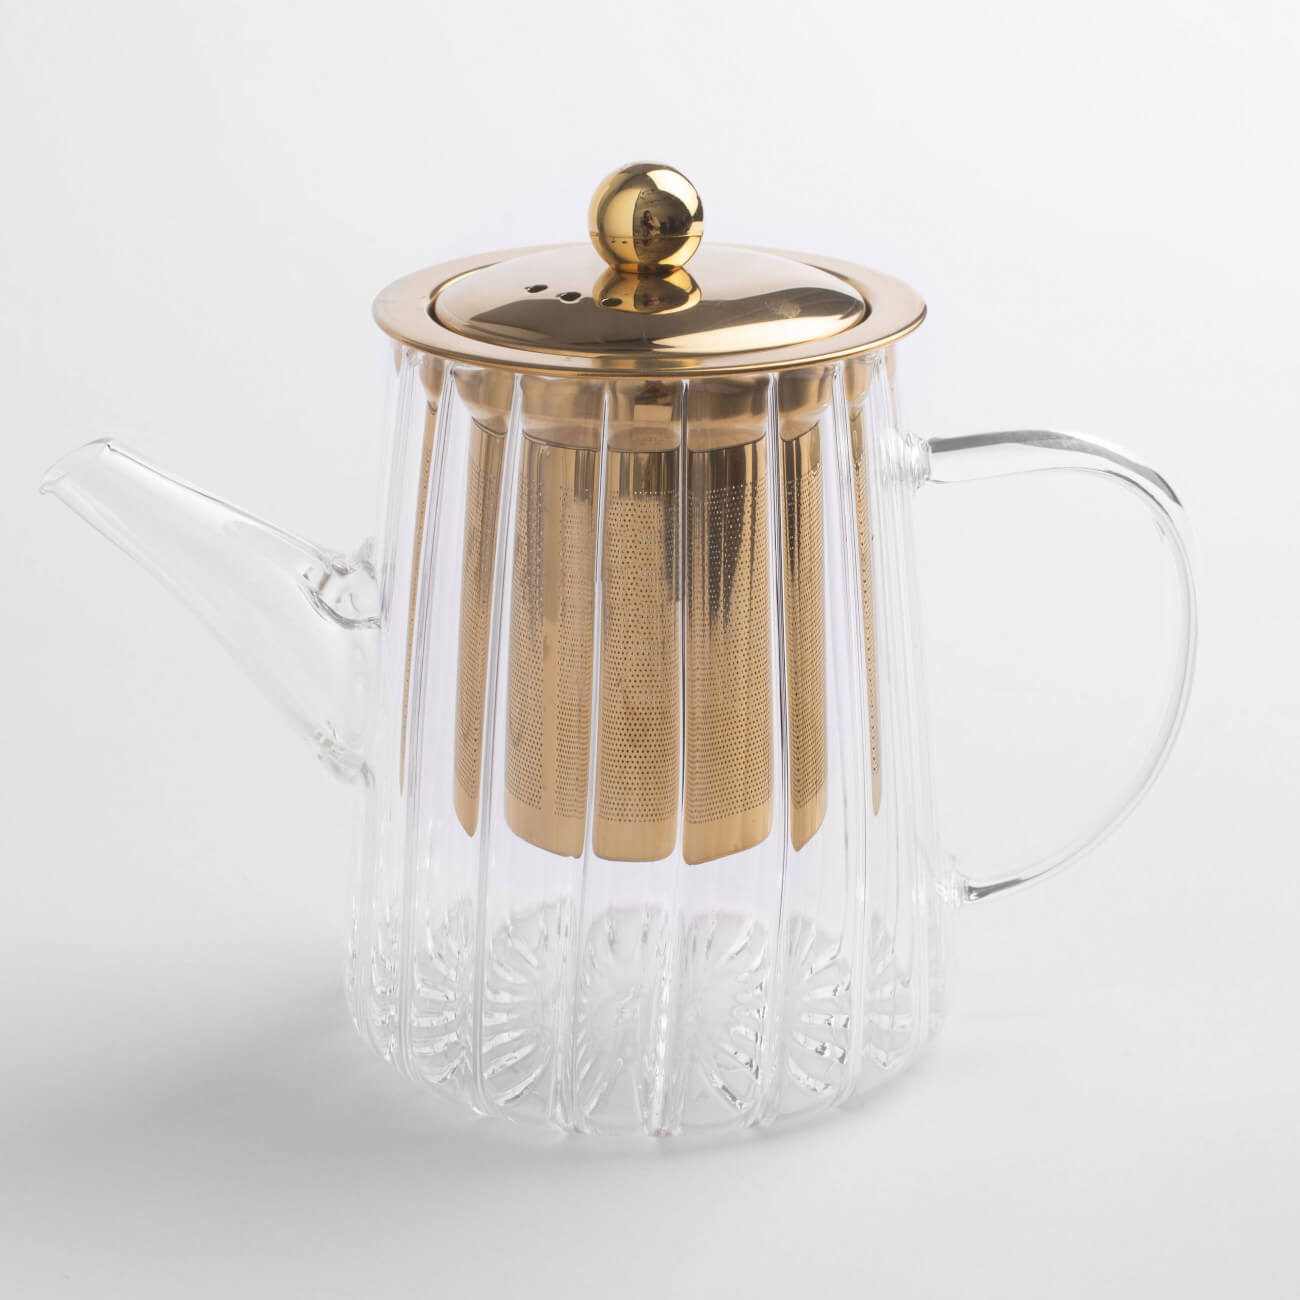 Чайник заварочный, 600 мл, стекло Б/сталь, золотистый, Camellia gold чайник заварочный 850 мл стекло б сталь macchiato